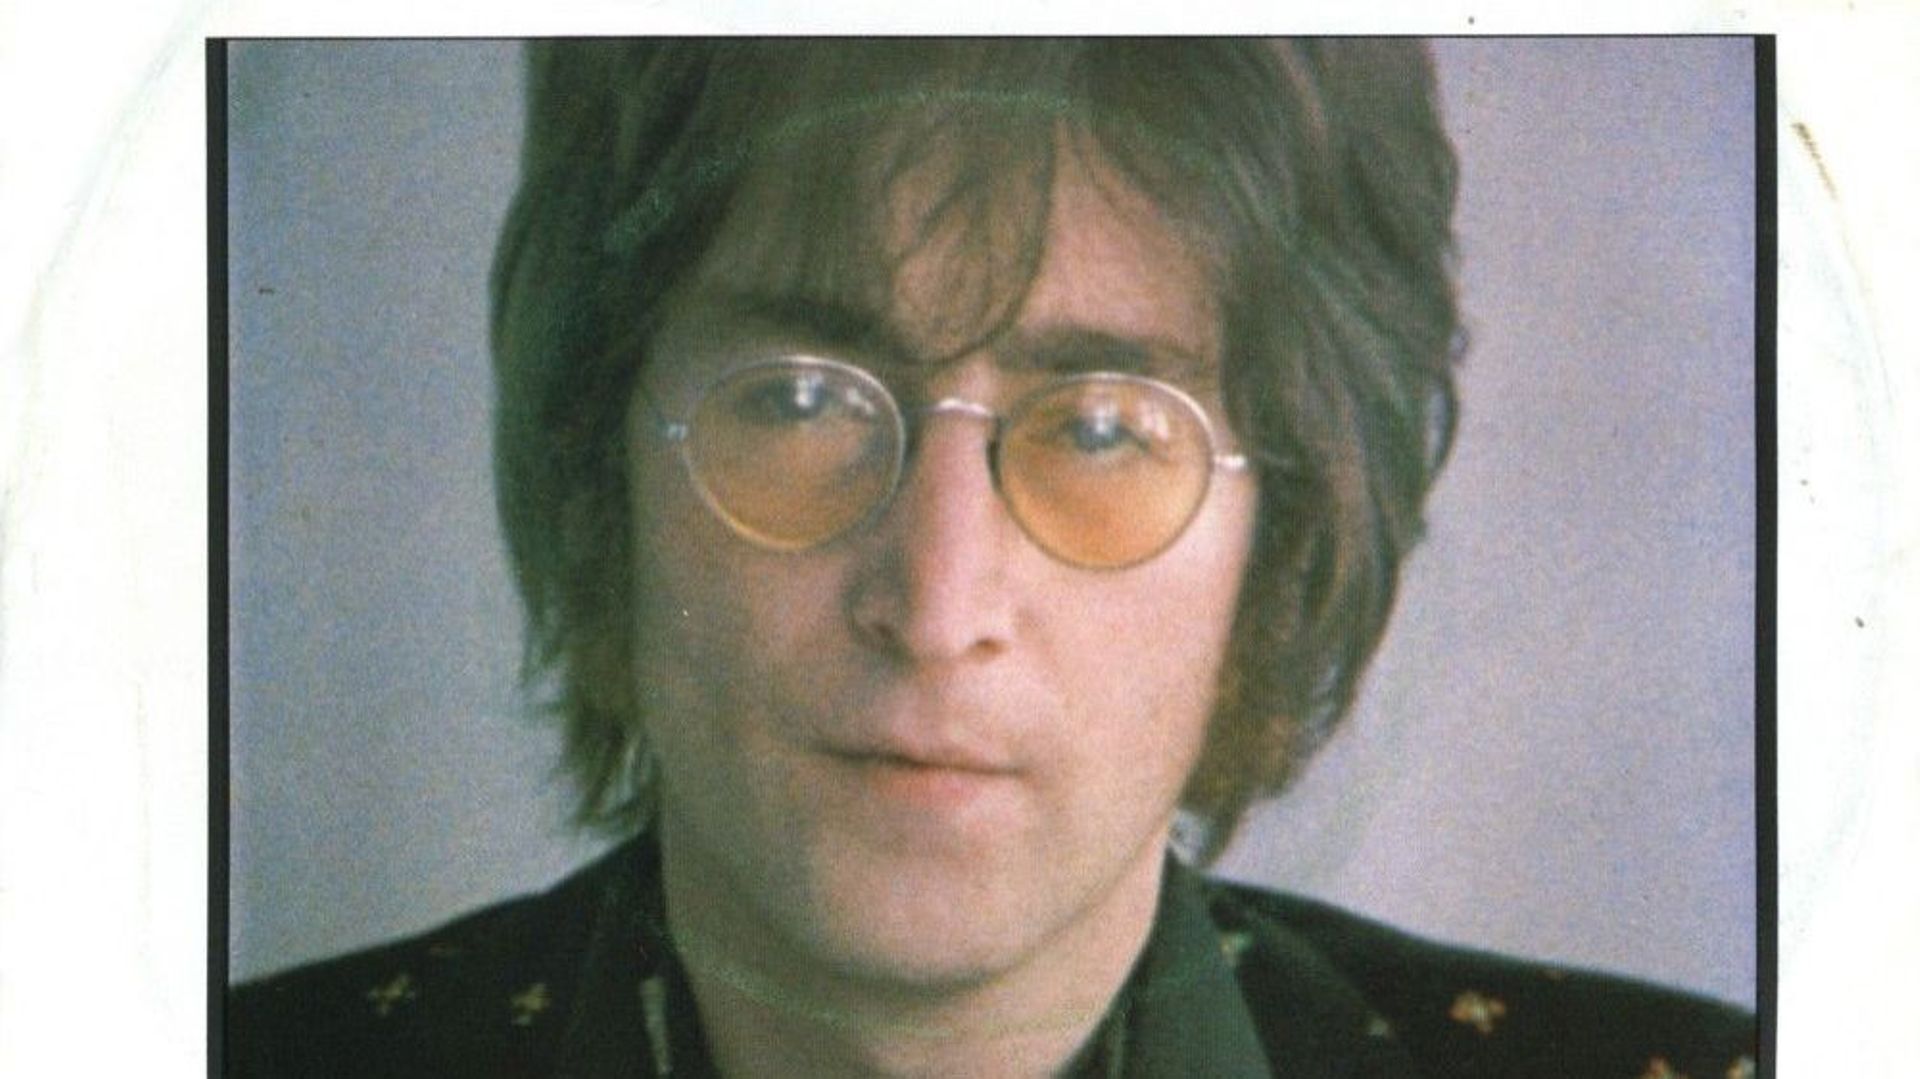 John Lennon : "Jealous Guy"